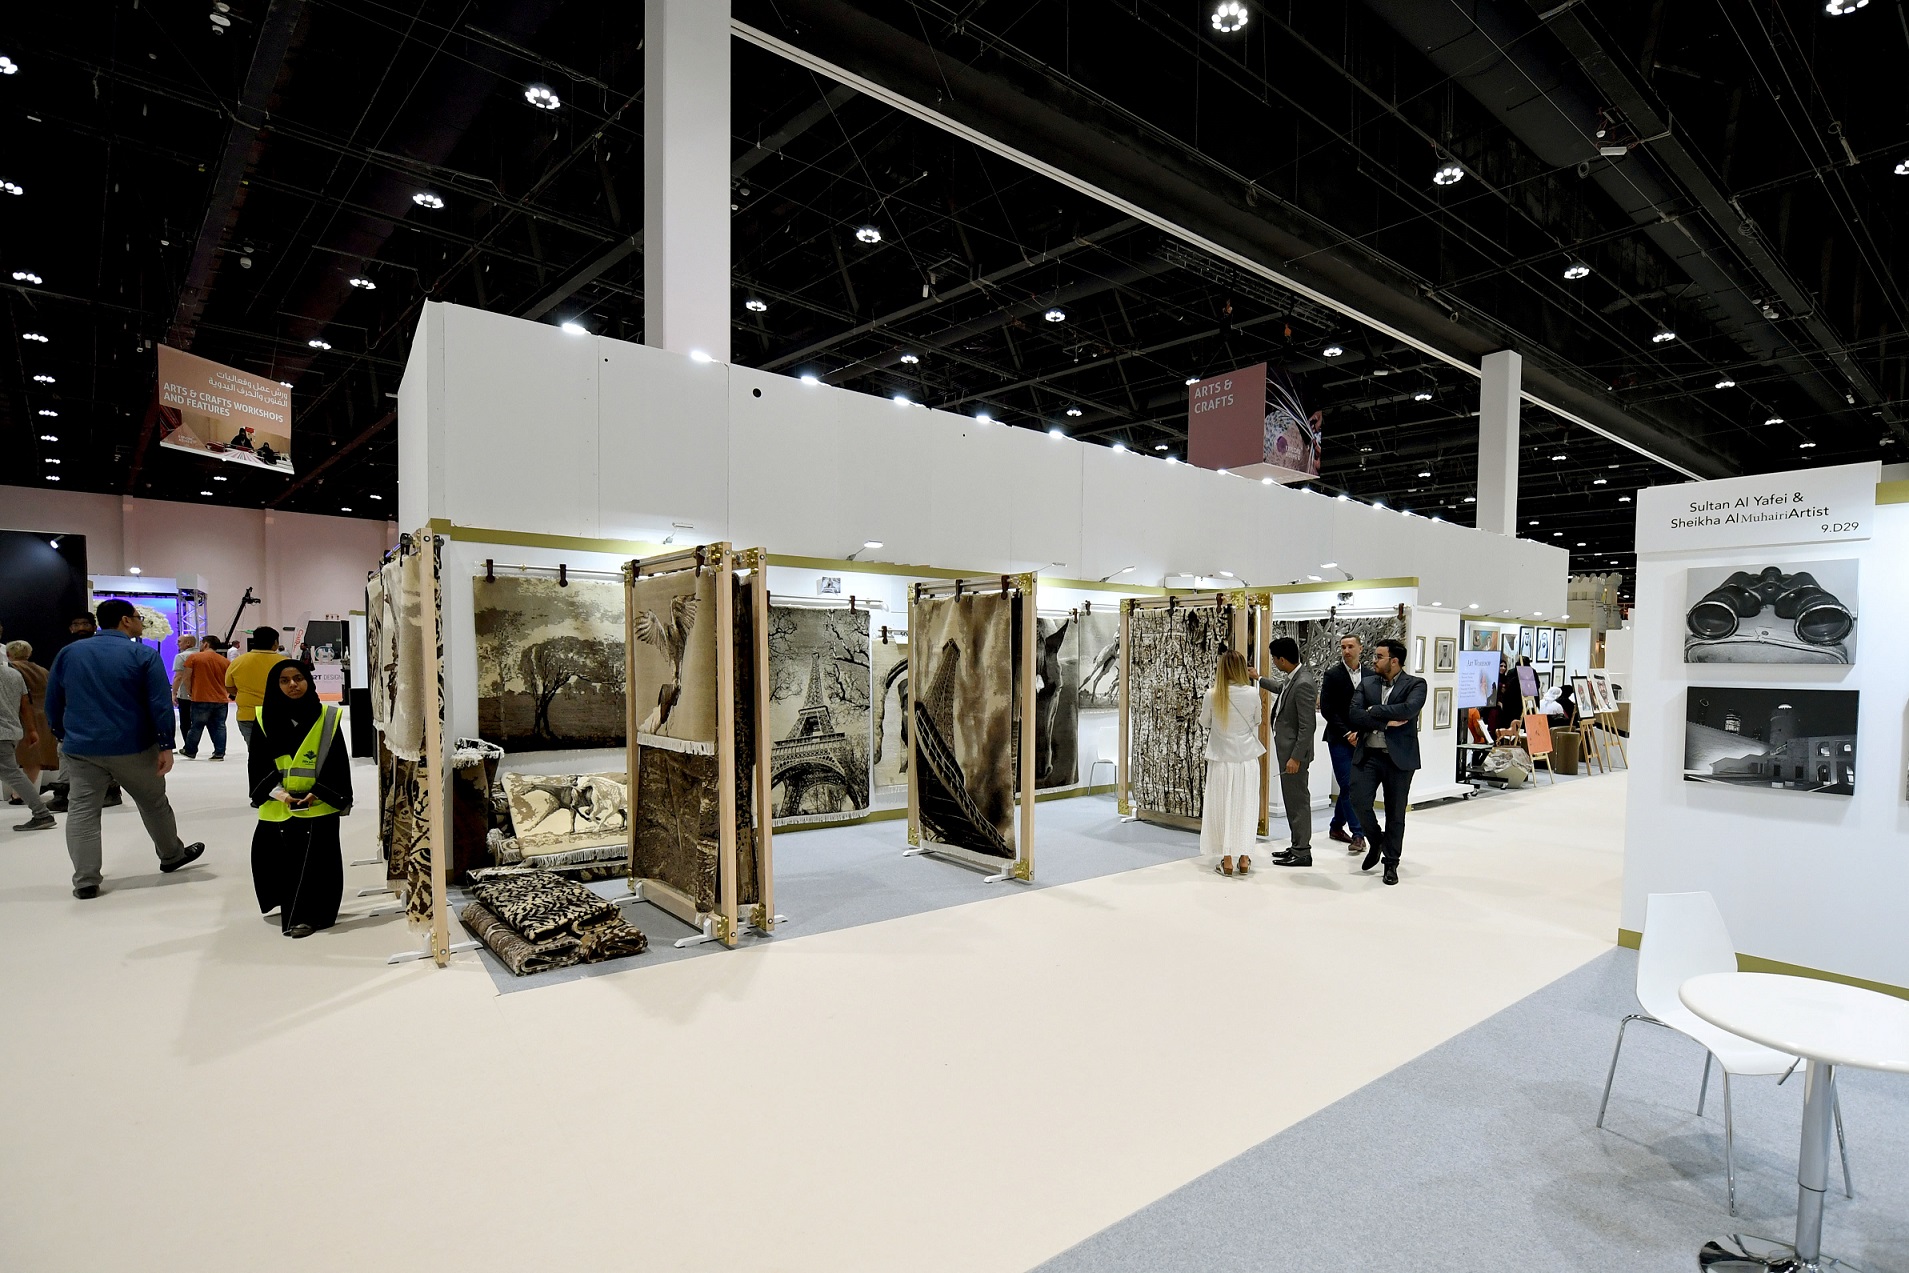  125 فنّاناً إماراتياً وعربياً وعالمياً يعرضون إبداعاتهم في معرض أبوظبي الدولي للصيد  صور